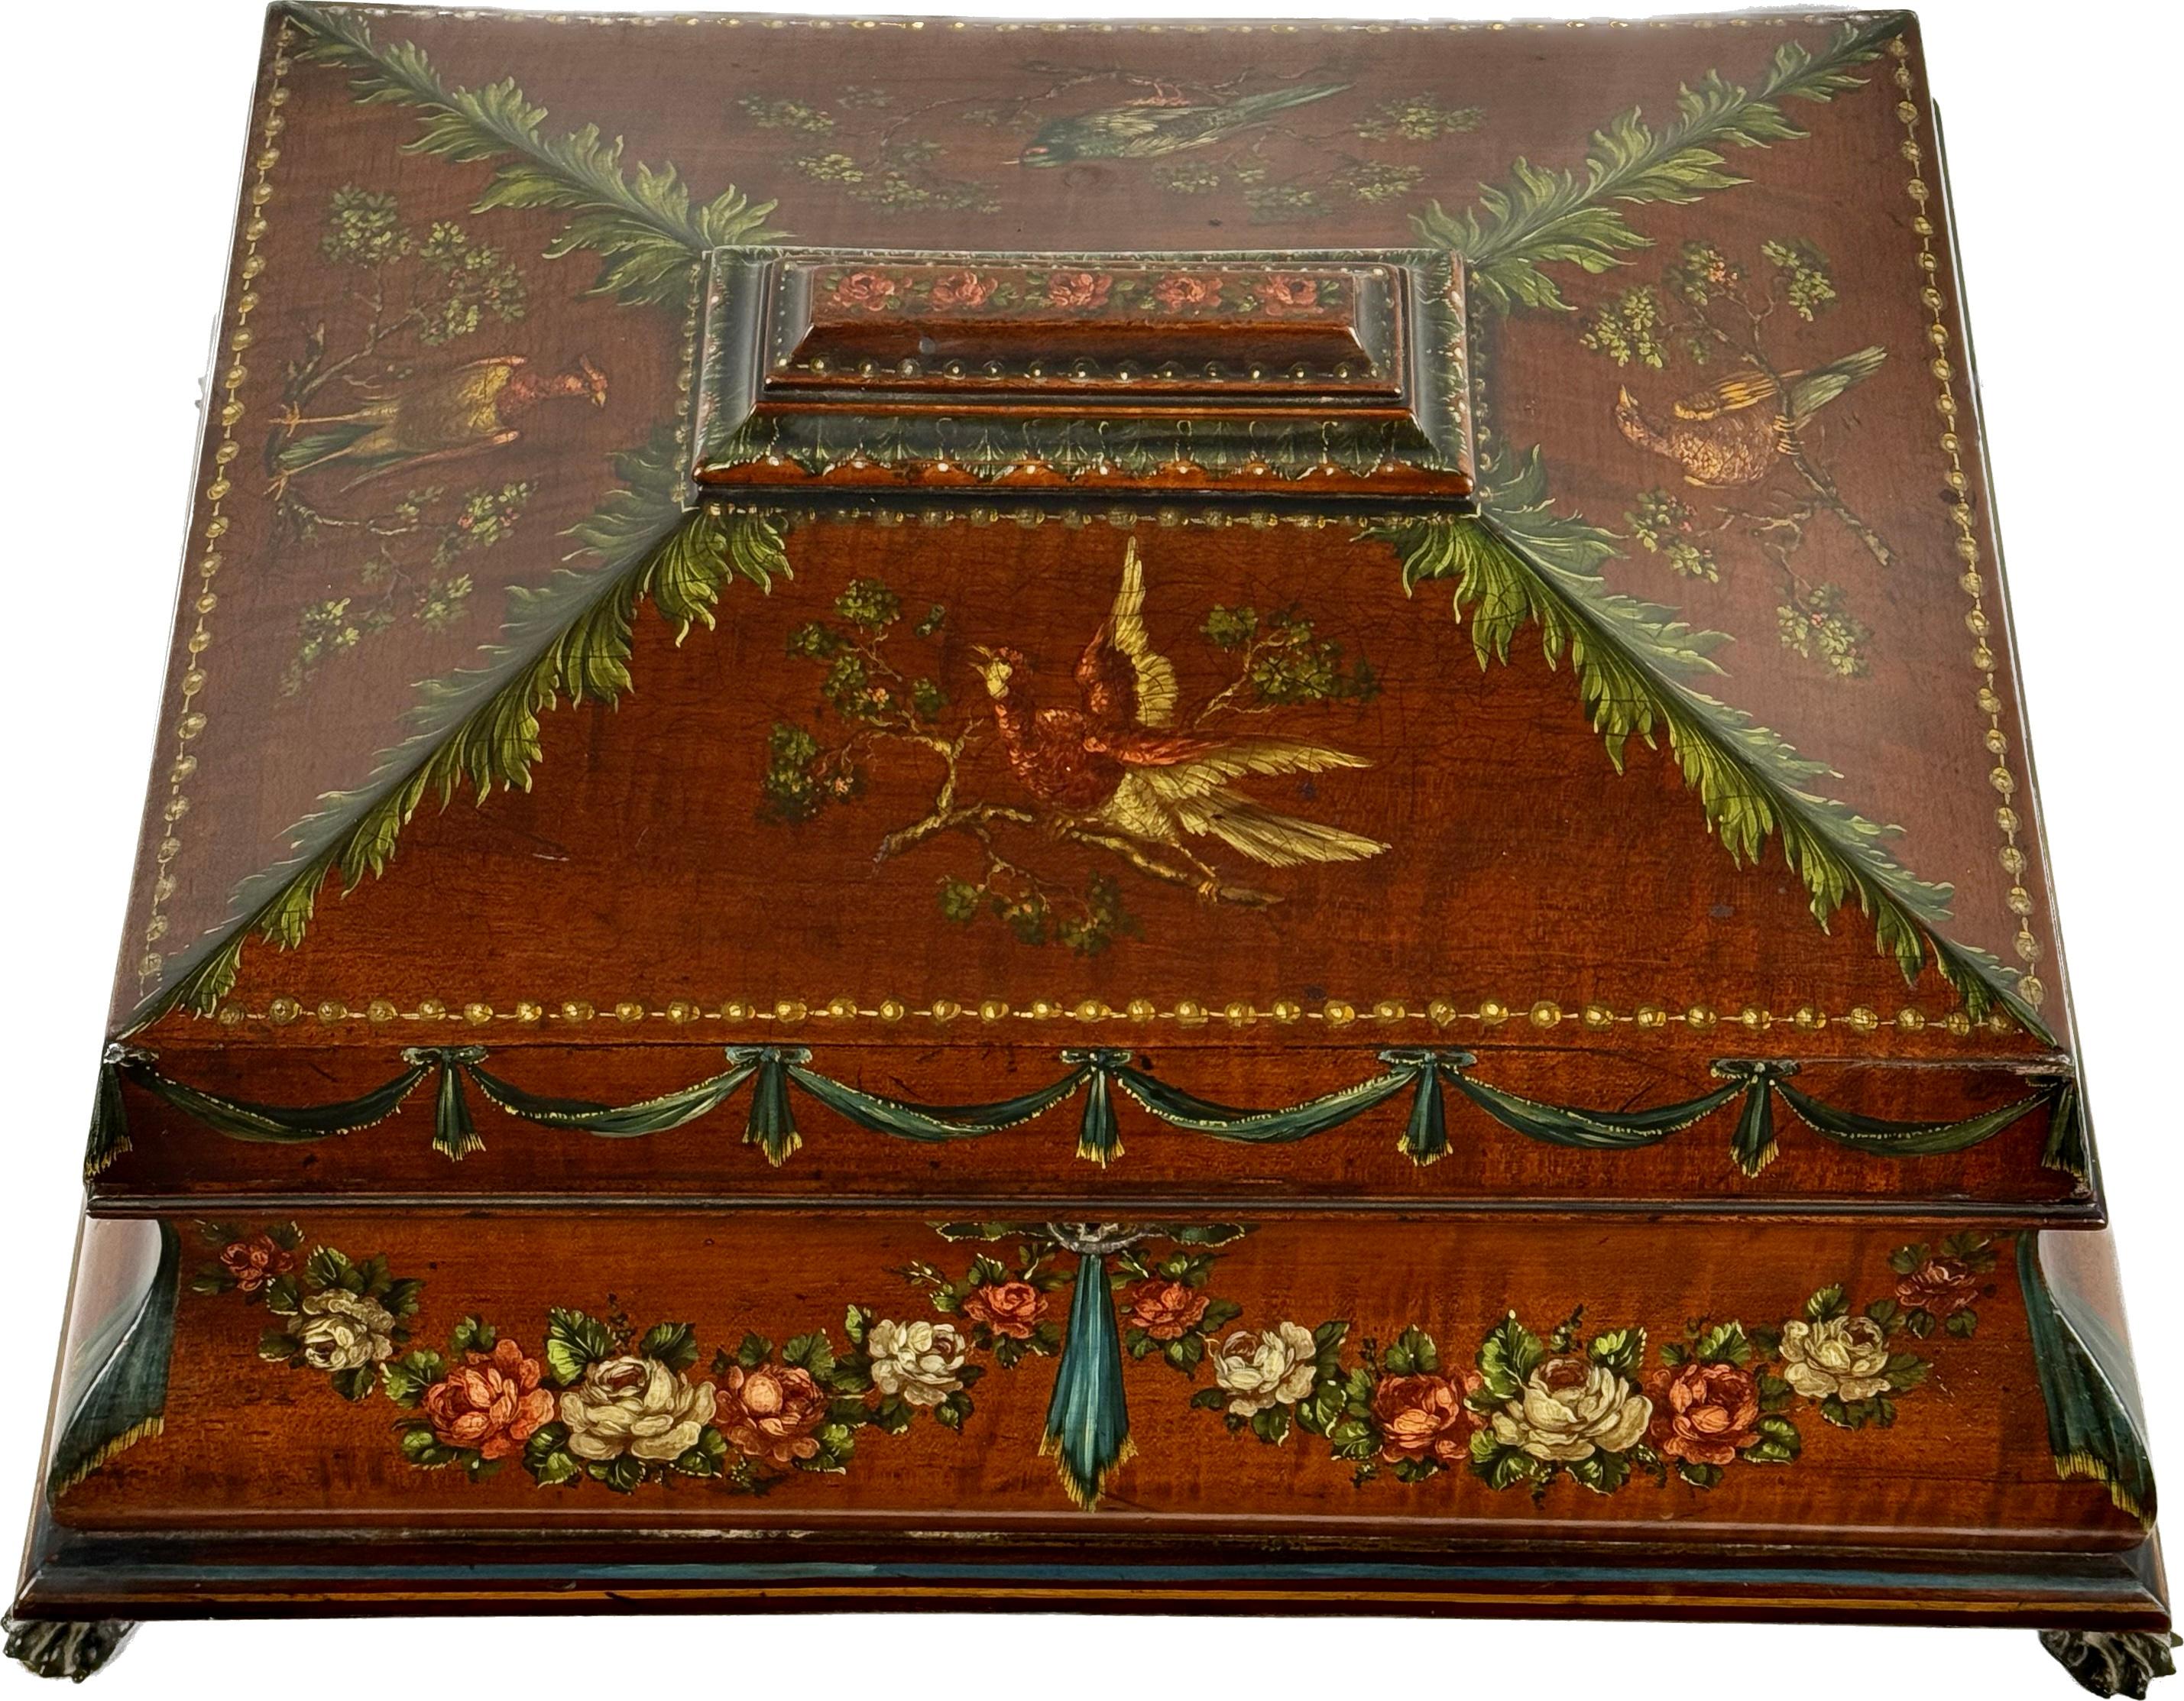 Einzigartige bemalte englische Kommode aus Satinholz aus dem 19. Jahrhundert. Die Box hat ein farbenfrohes Blumen- und Banddesign mit exotischen Vögeln auf einem schönen Satinholz-Hintergrund. Die Designs sind in Erdtönen wie Grün, Creme, Rosa und